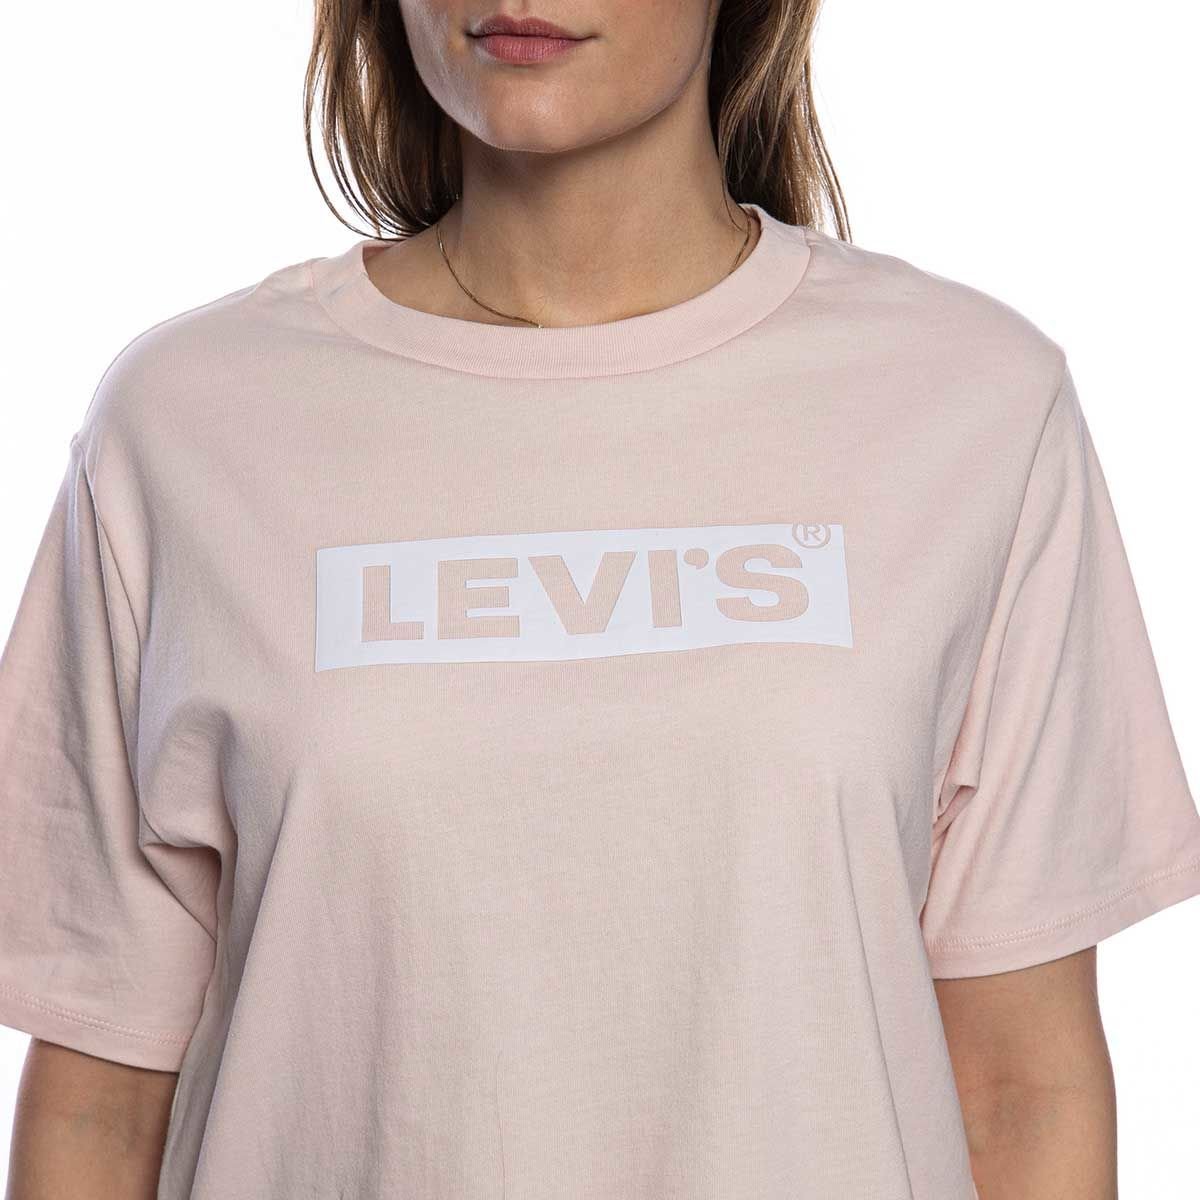 levis pink top